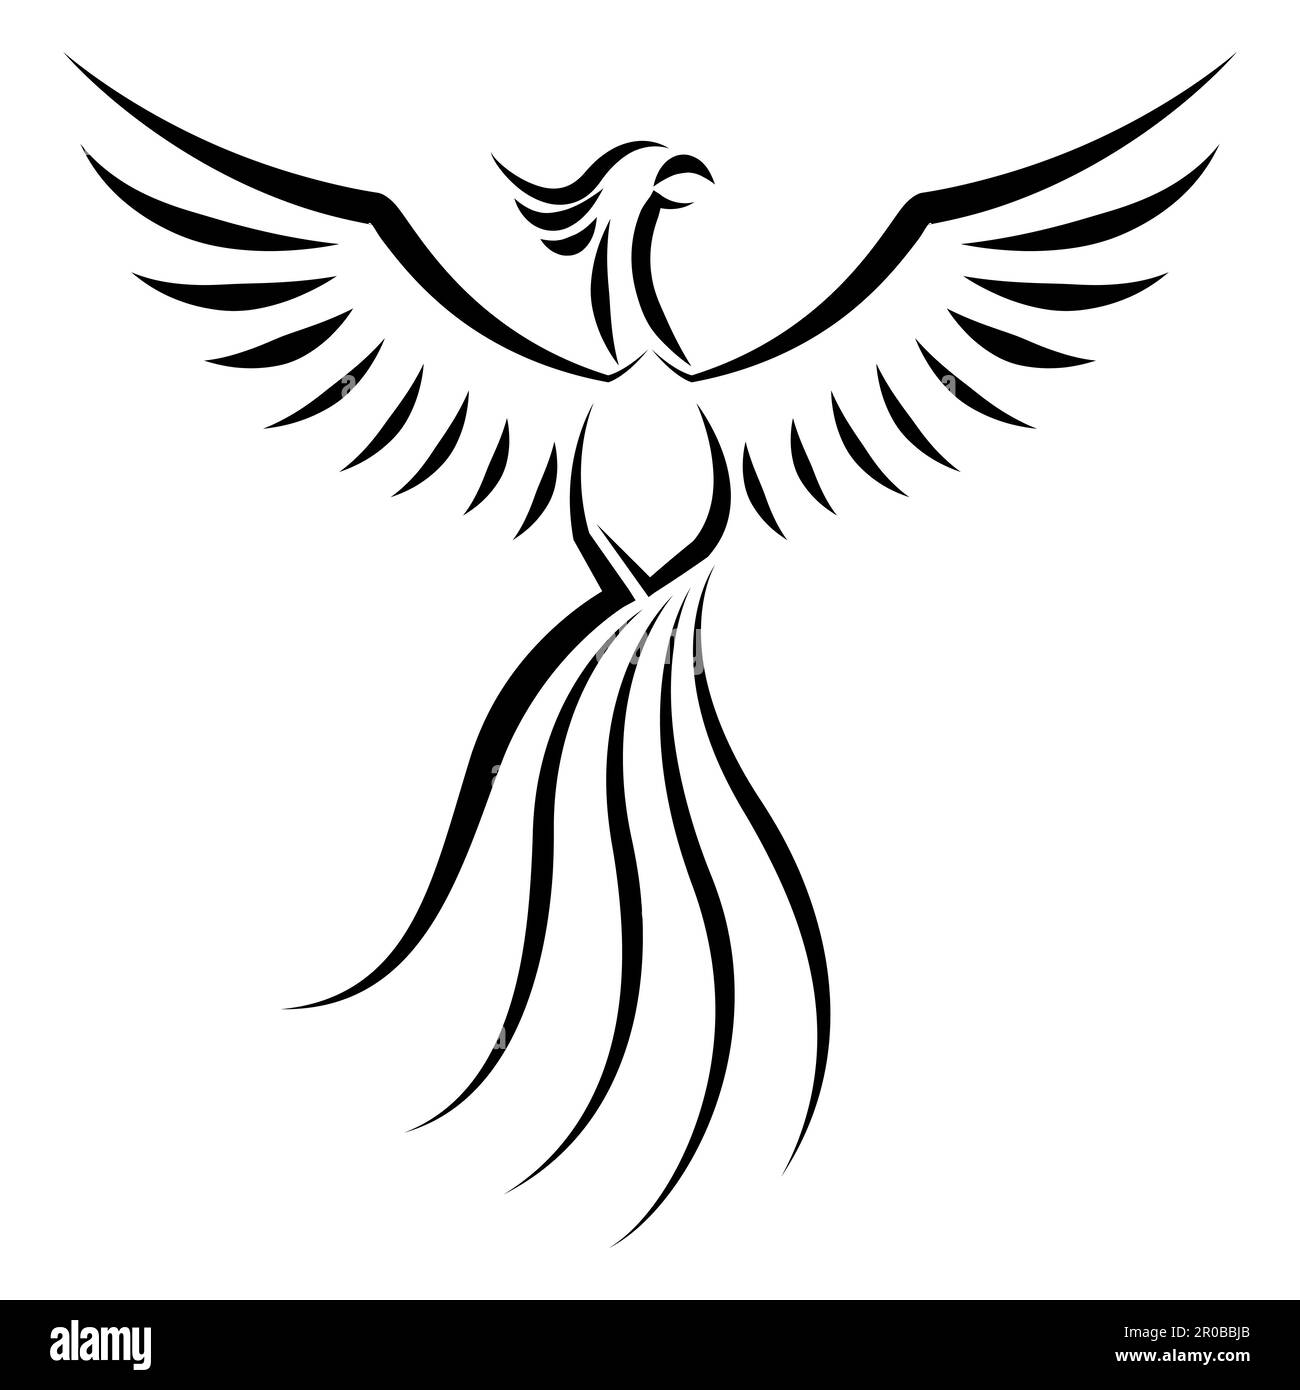 L'art noir et blanc de la ligne de Phoenix volante bonne utilisation pour symbole mascotte icône avatar tatouage T shirt design logo ou n'importe quel design Illustration de Vecteur